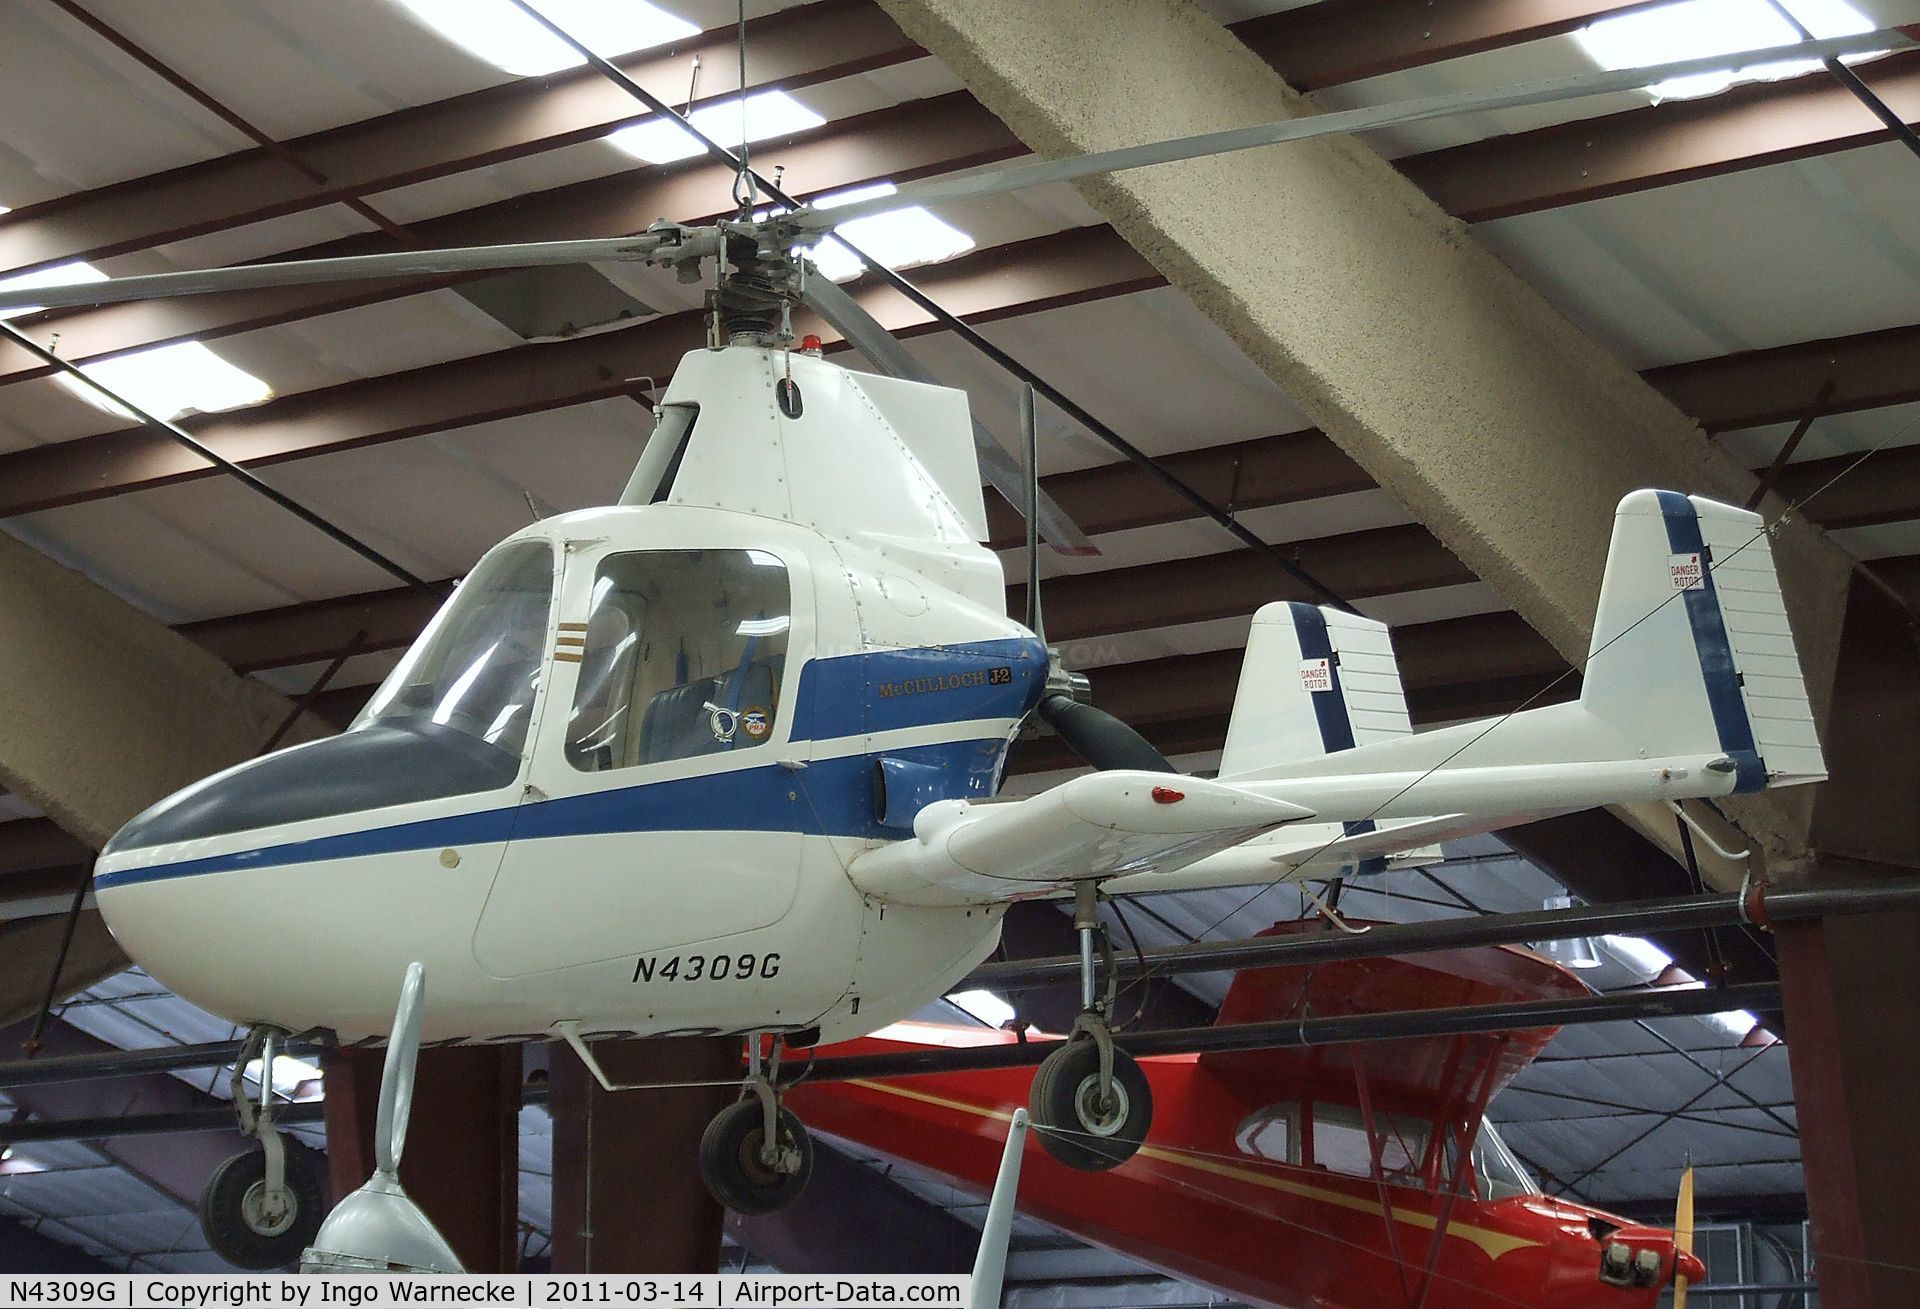 N4309G, 1971 McCulloch Super J-2 C/N 019, McCulloch Super J-2 Gyrocopter at the Pima Air & Space Museum, Tucson AZ